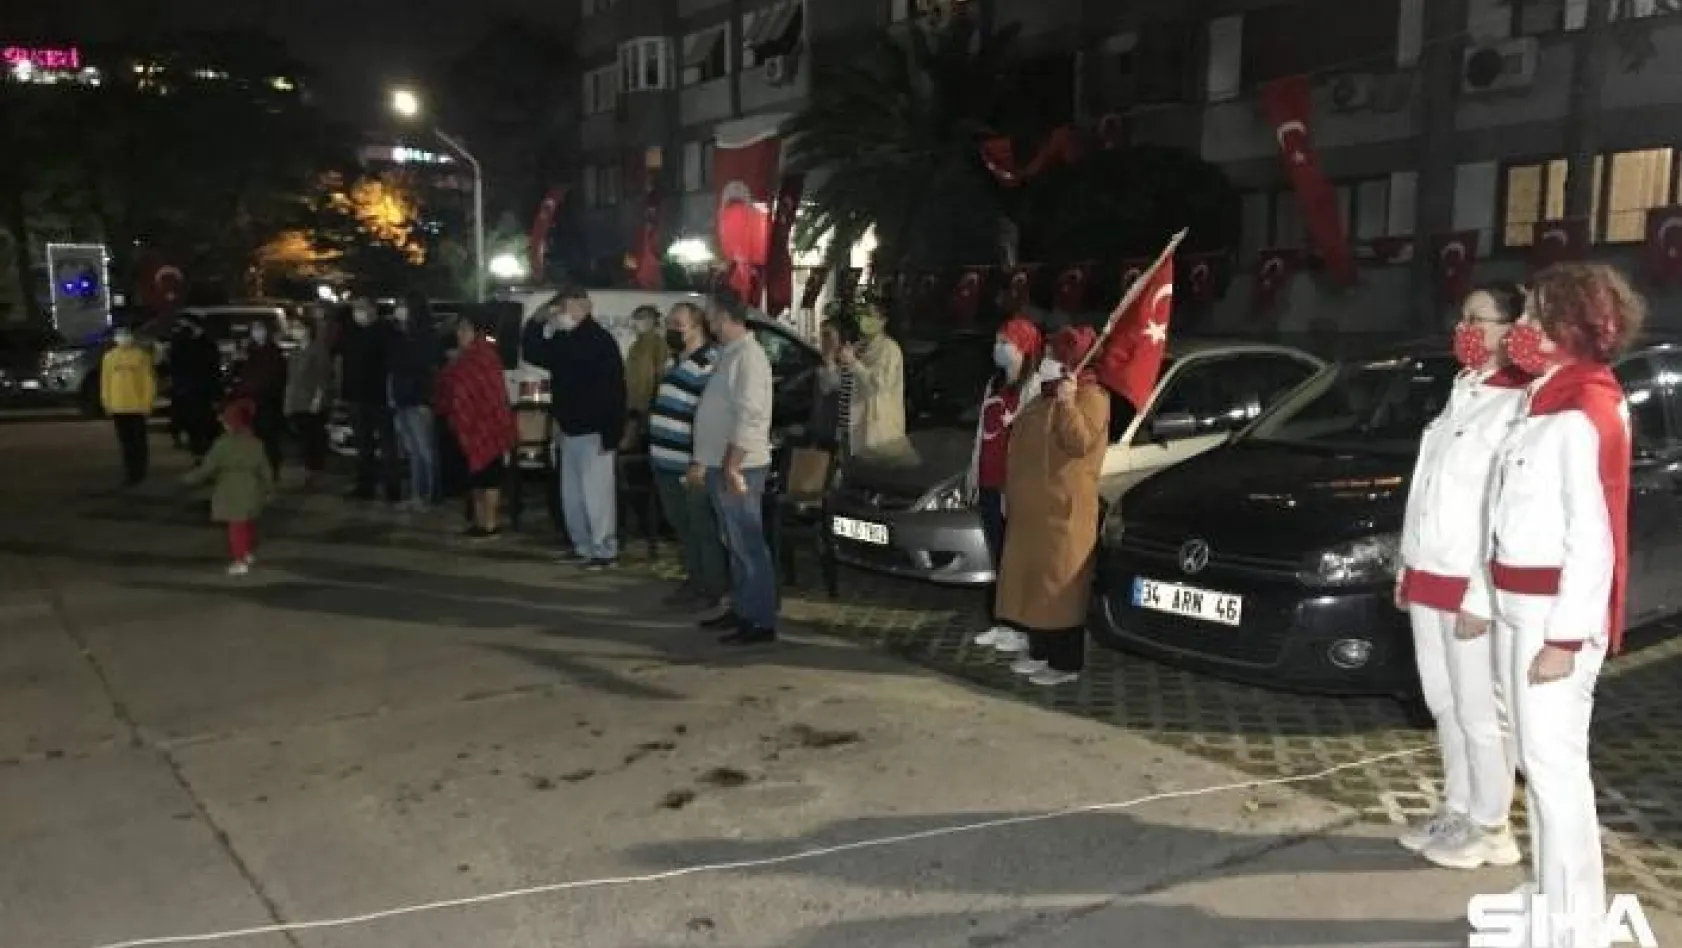 Vatandaşlar 19.23'te sokak ve balkonlarda İstiklal Marşı okudu